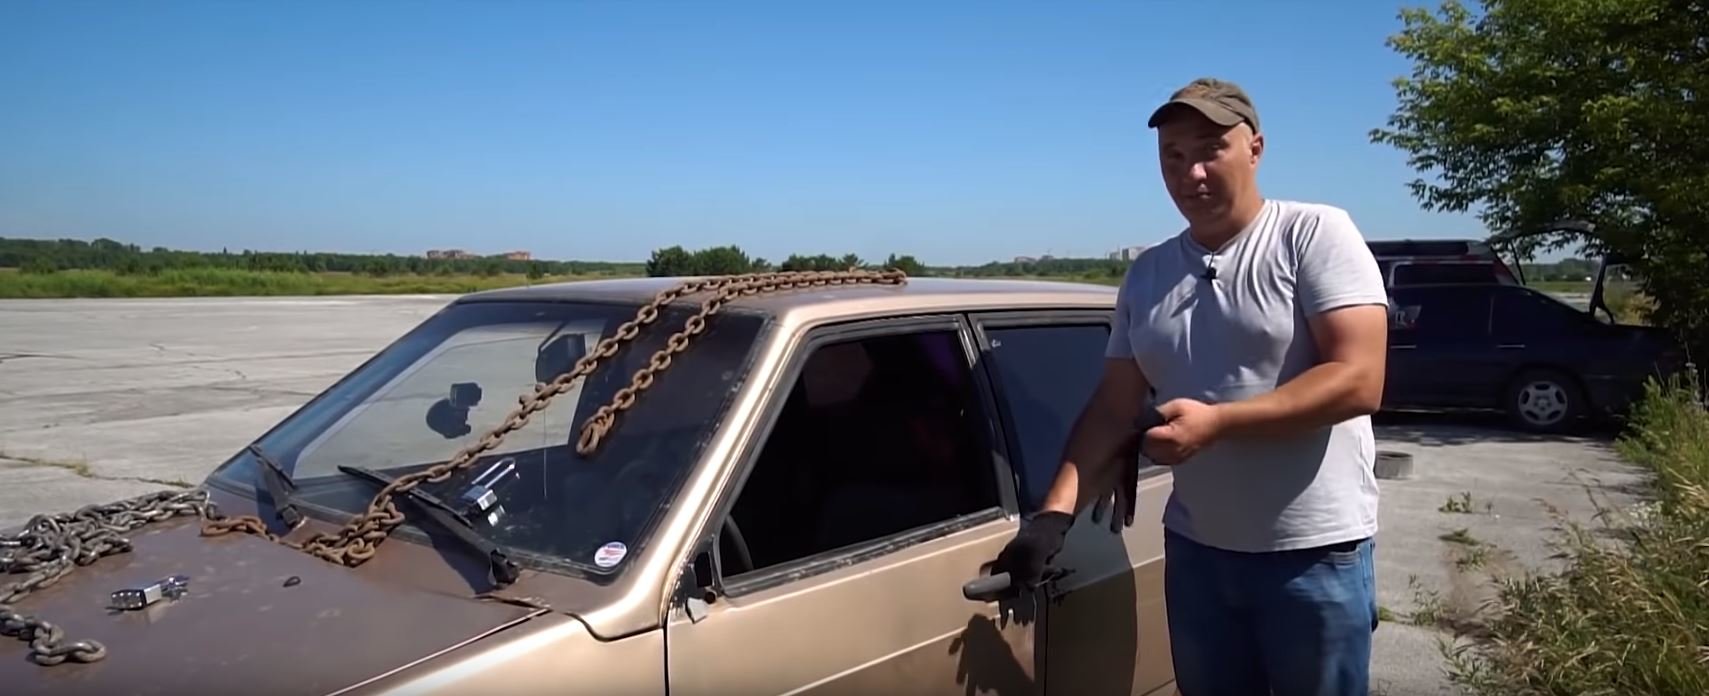 Ruský YouTuber z kanálu Garage 54 vyzkoušel možnosti zabezpečení auta pomocí řetězu